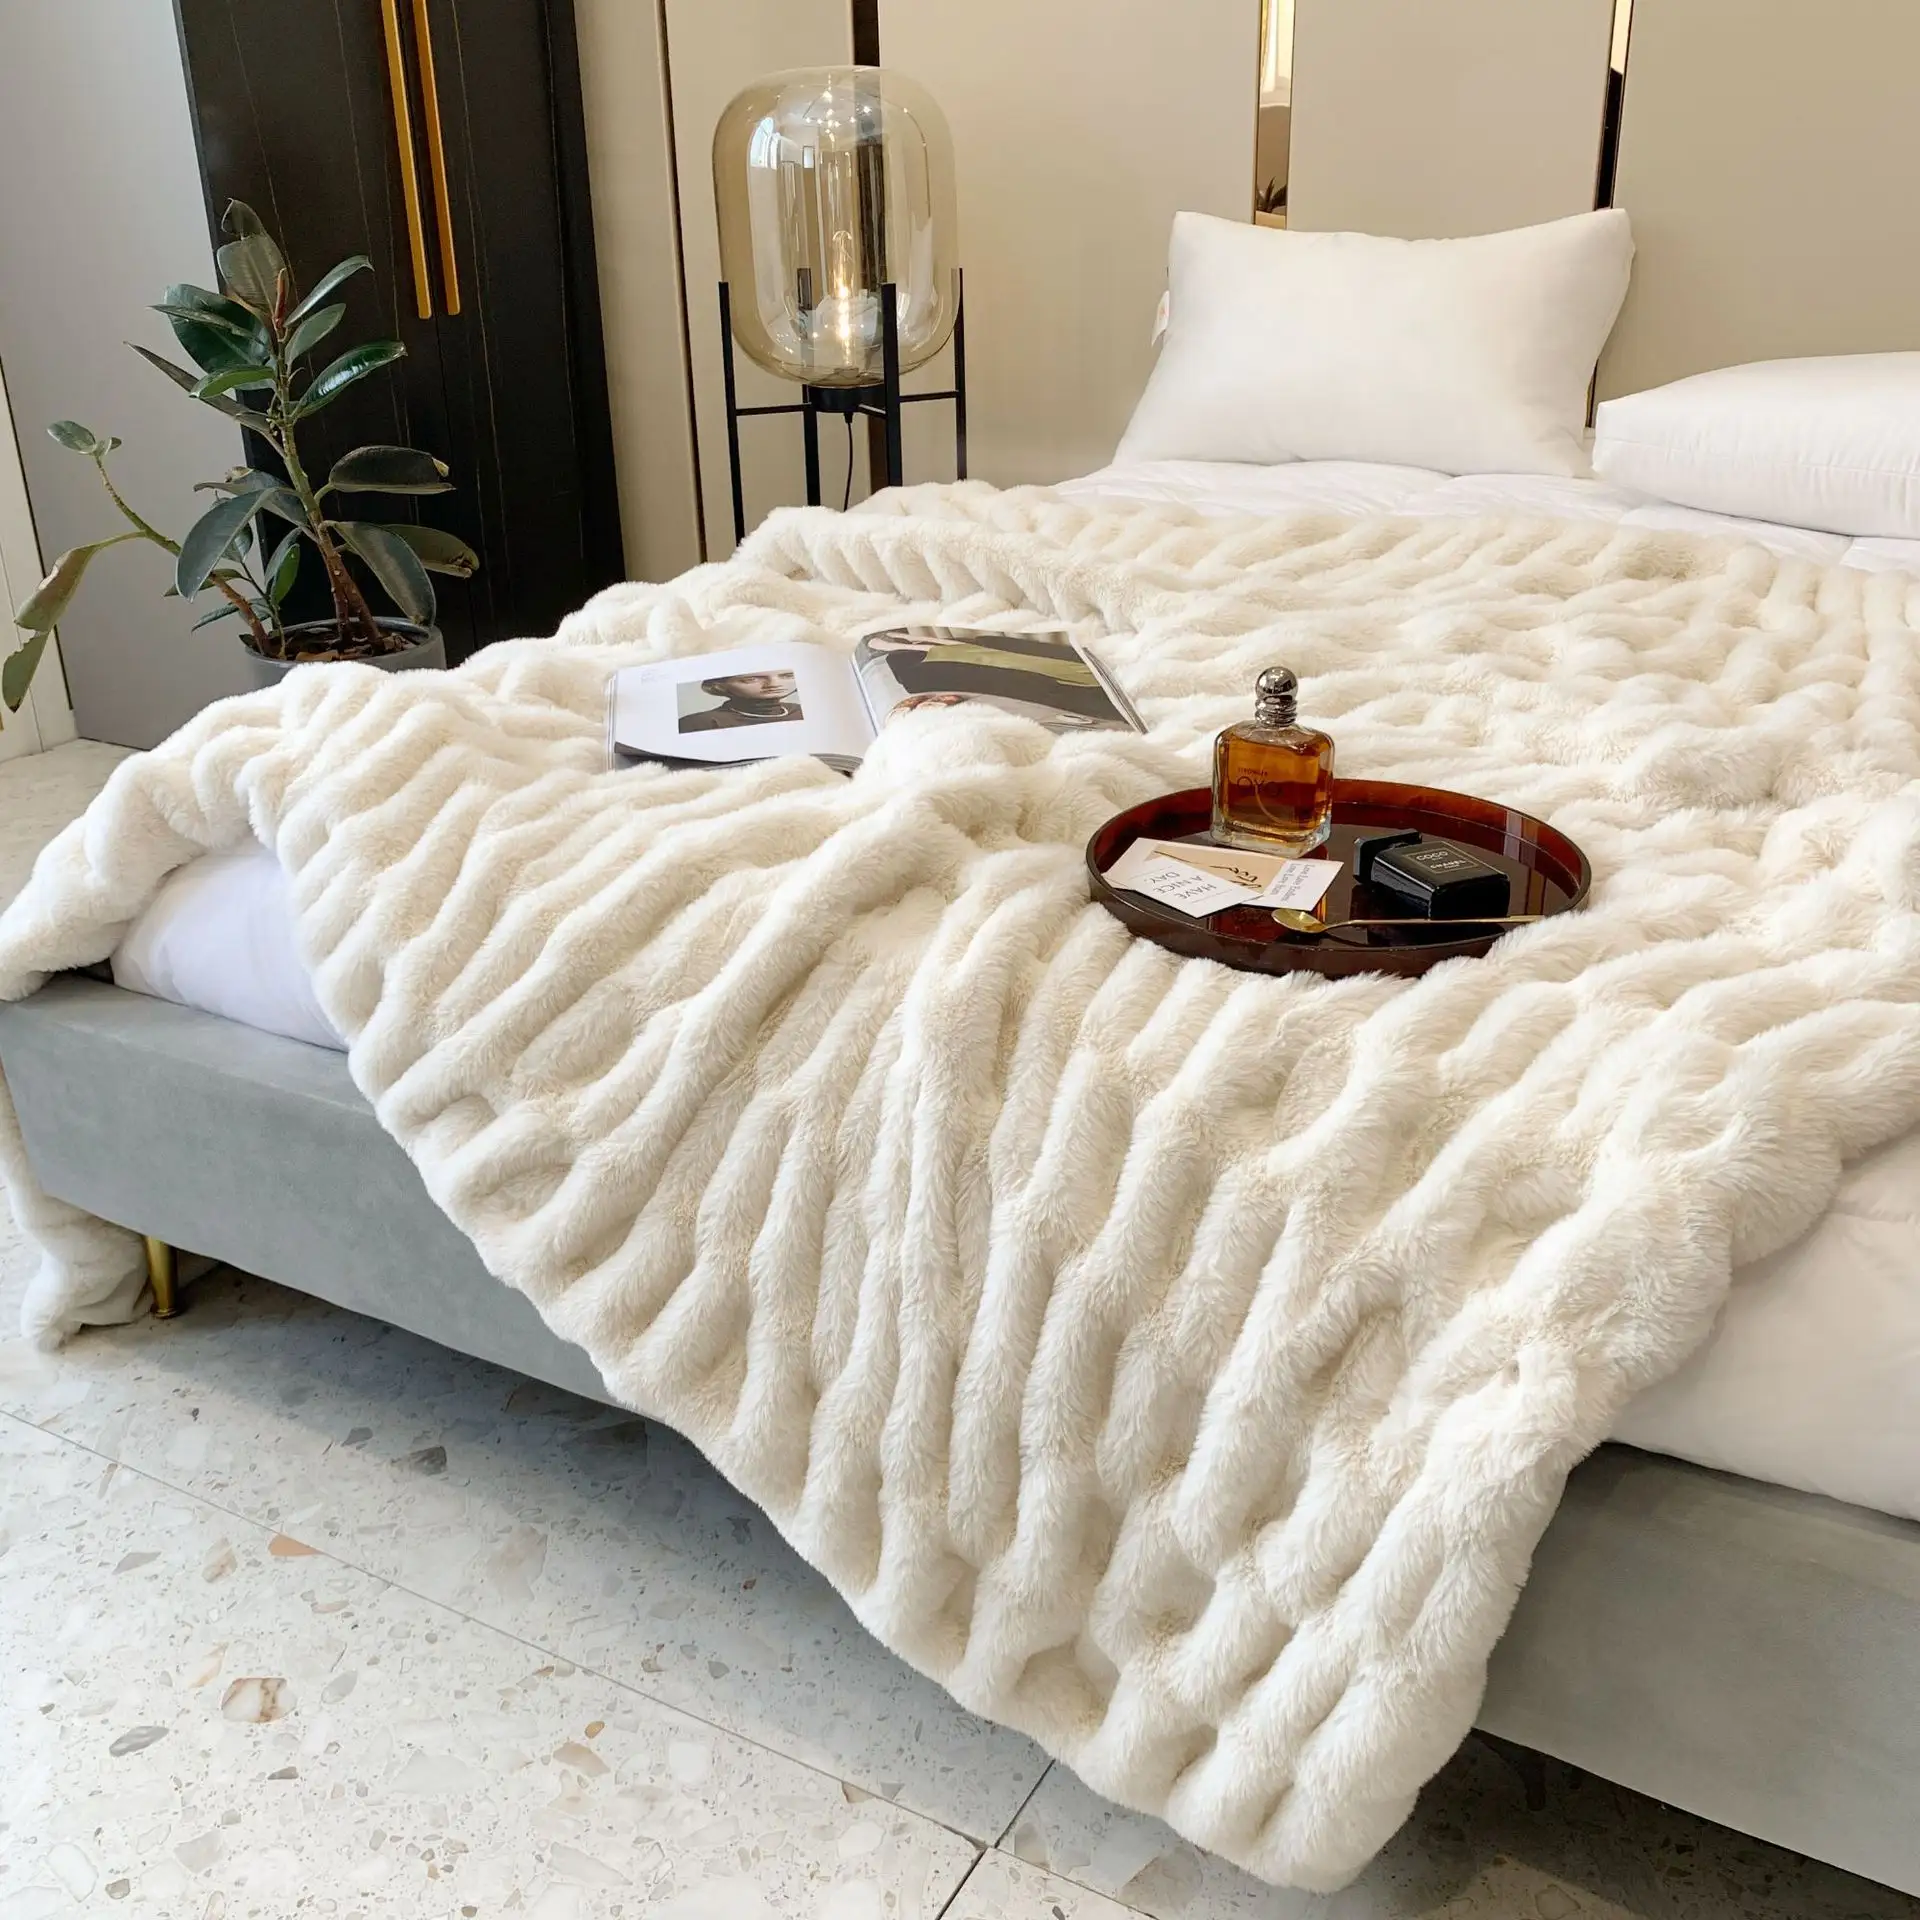 Sıcak lüks yatak örtüsü yorgan kalın tüylü kış atmak battaniye bebek ve anneler polar tıknaz vizon sahte kürk battaniye